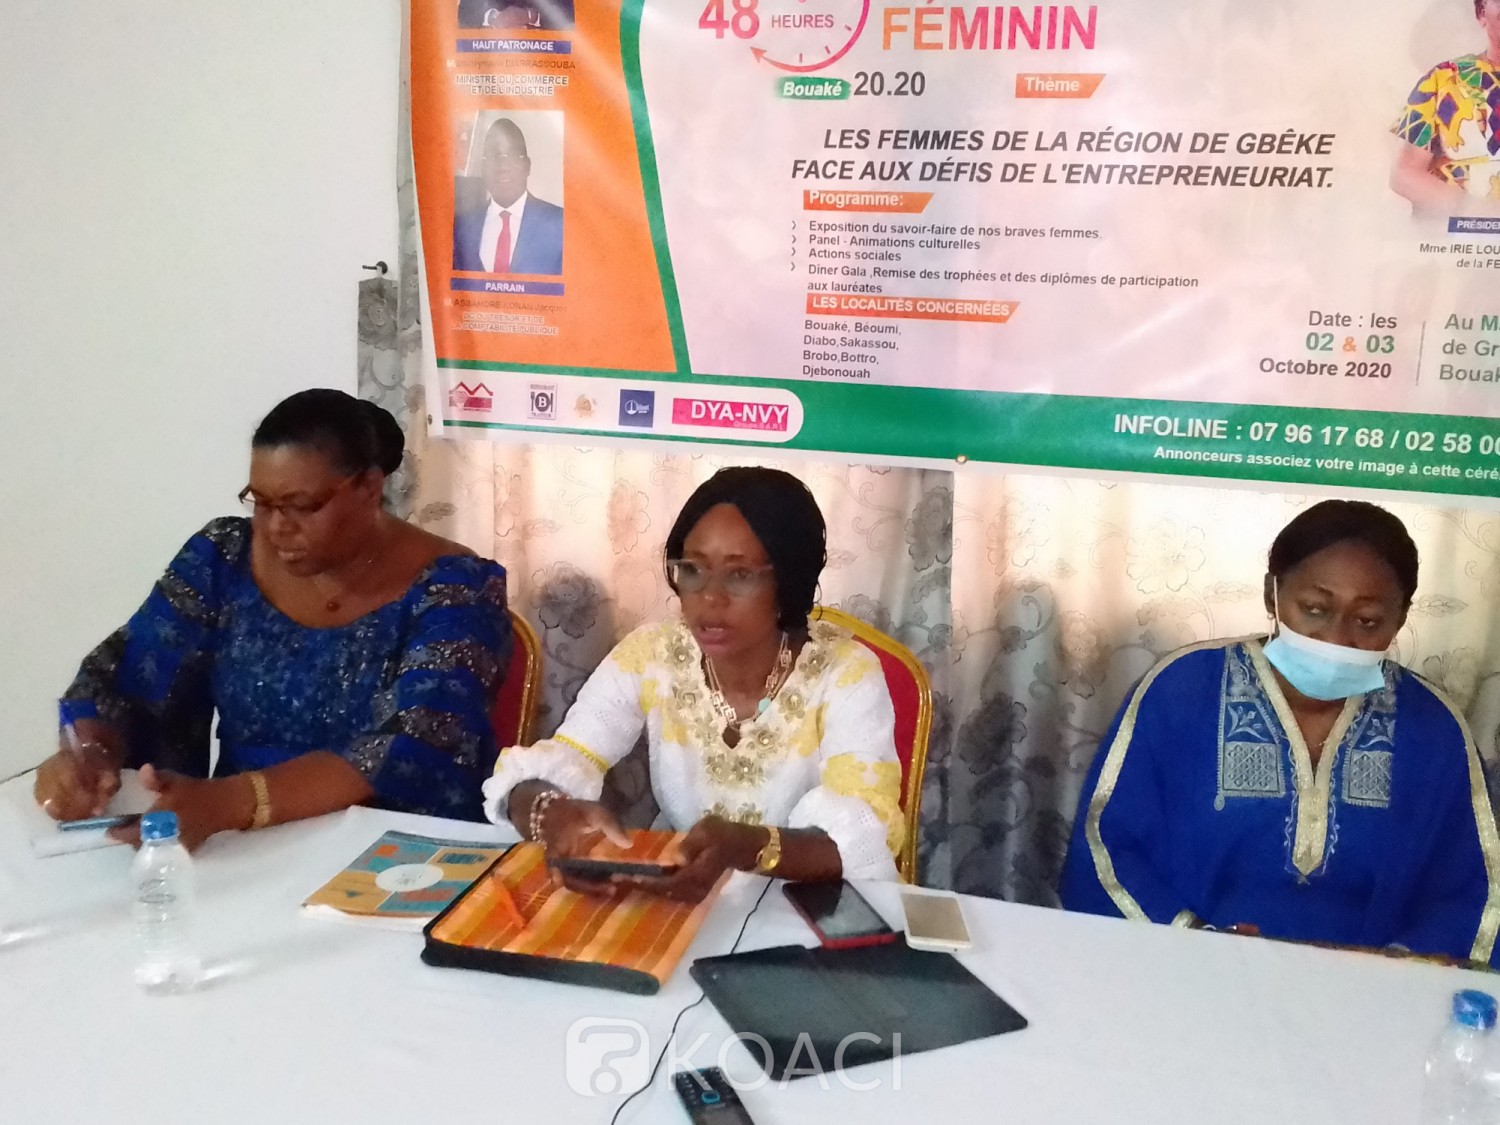 Côte d'Ivoire : Bouaké, afin de leurs donner une visibilité, les femmes bientôt célébrées au marché de gros